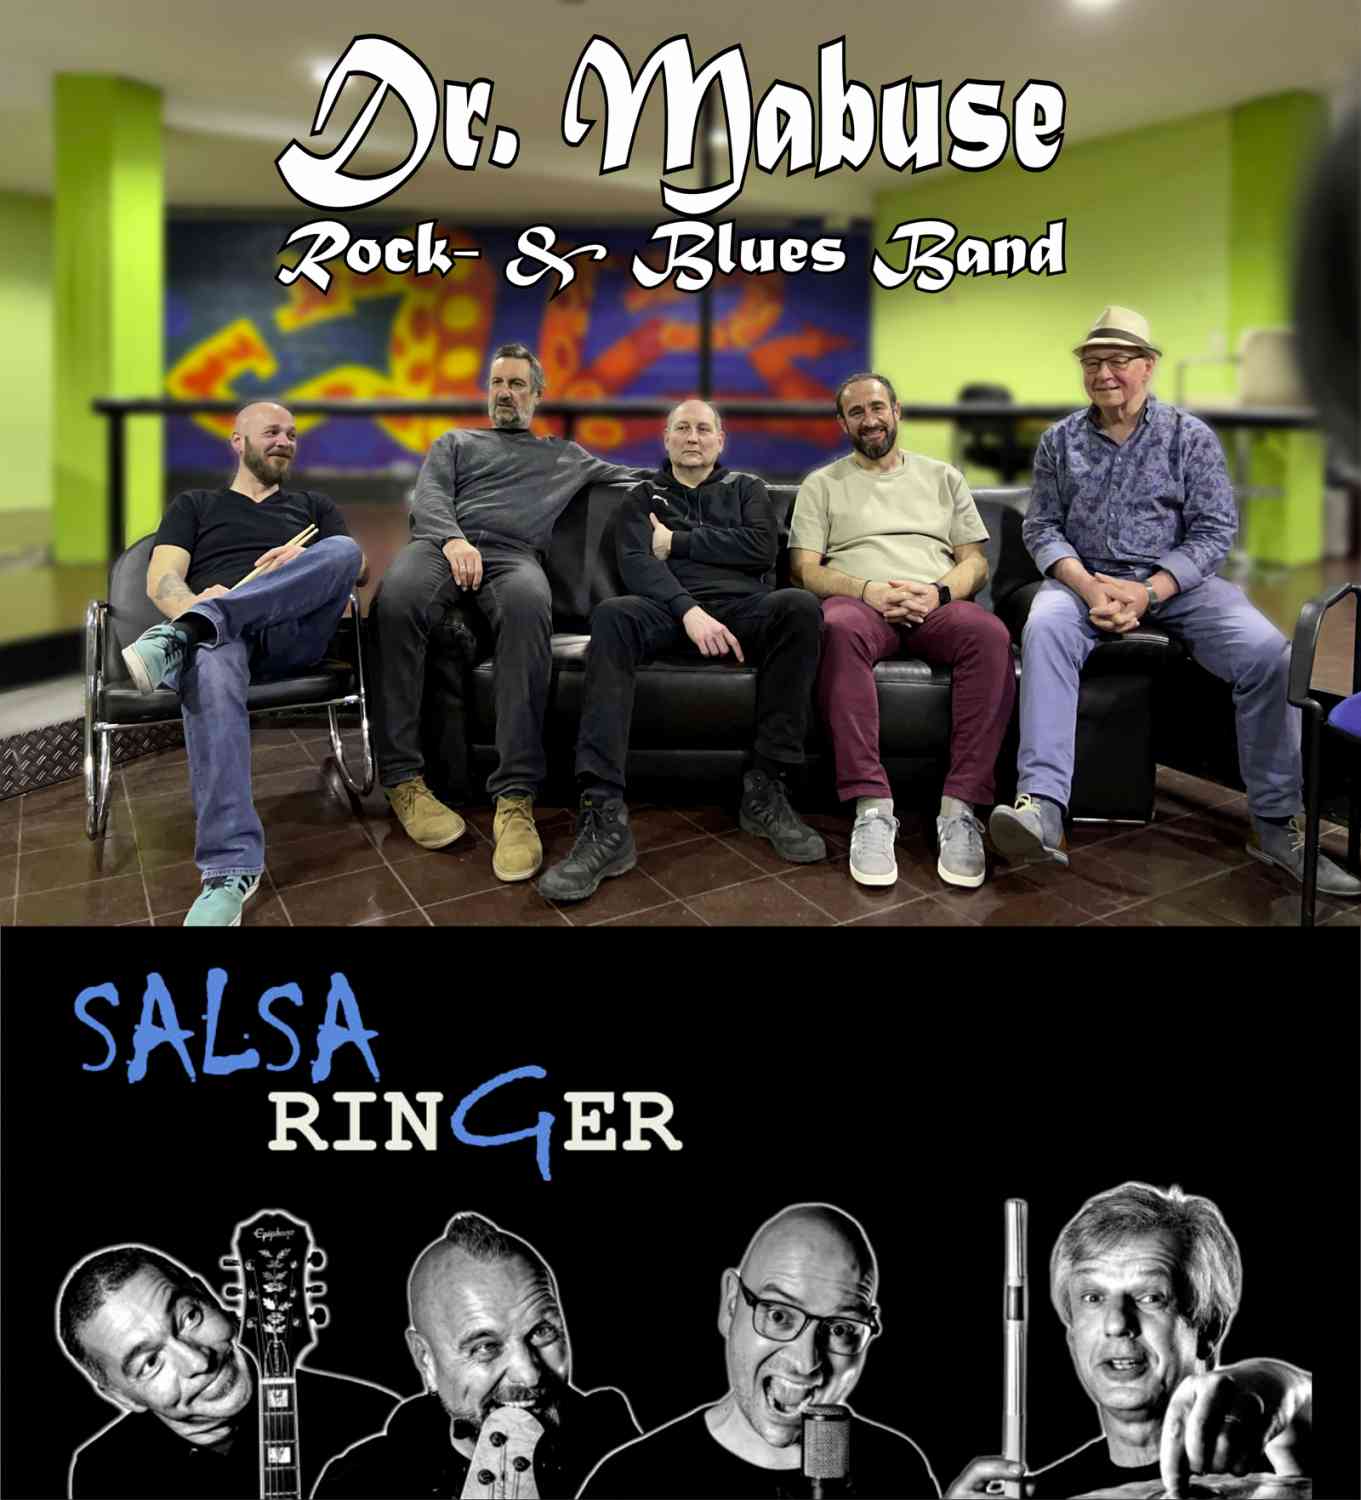 Klubabendsommer im Pfarrgarten mit den Bands "Dr. Mabuse" und "Salsaringer"